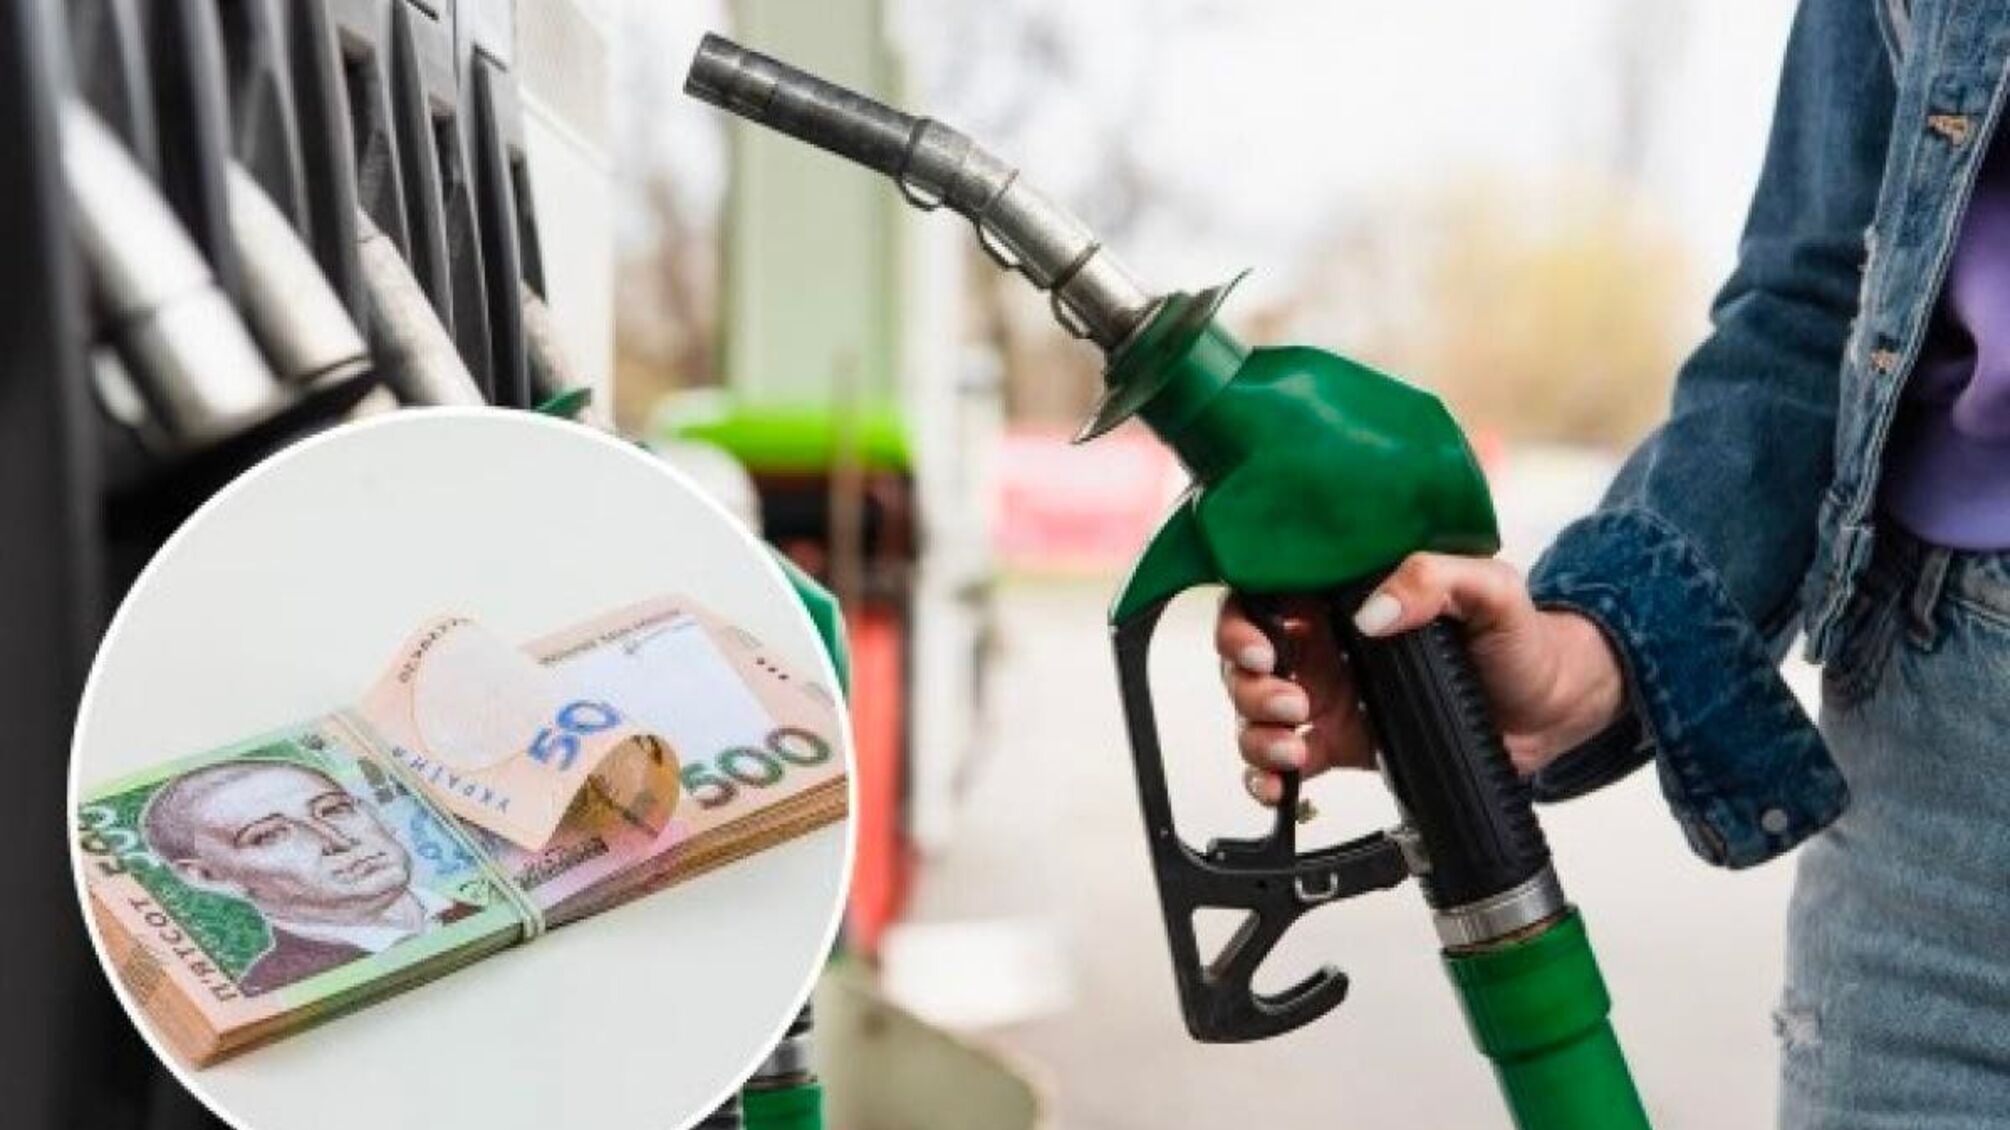 Збільшення цін на паливо через страйк польських перевізників 